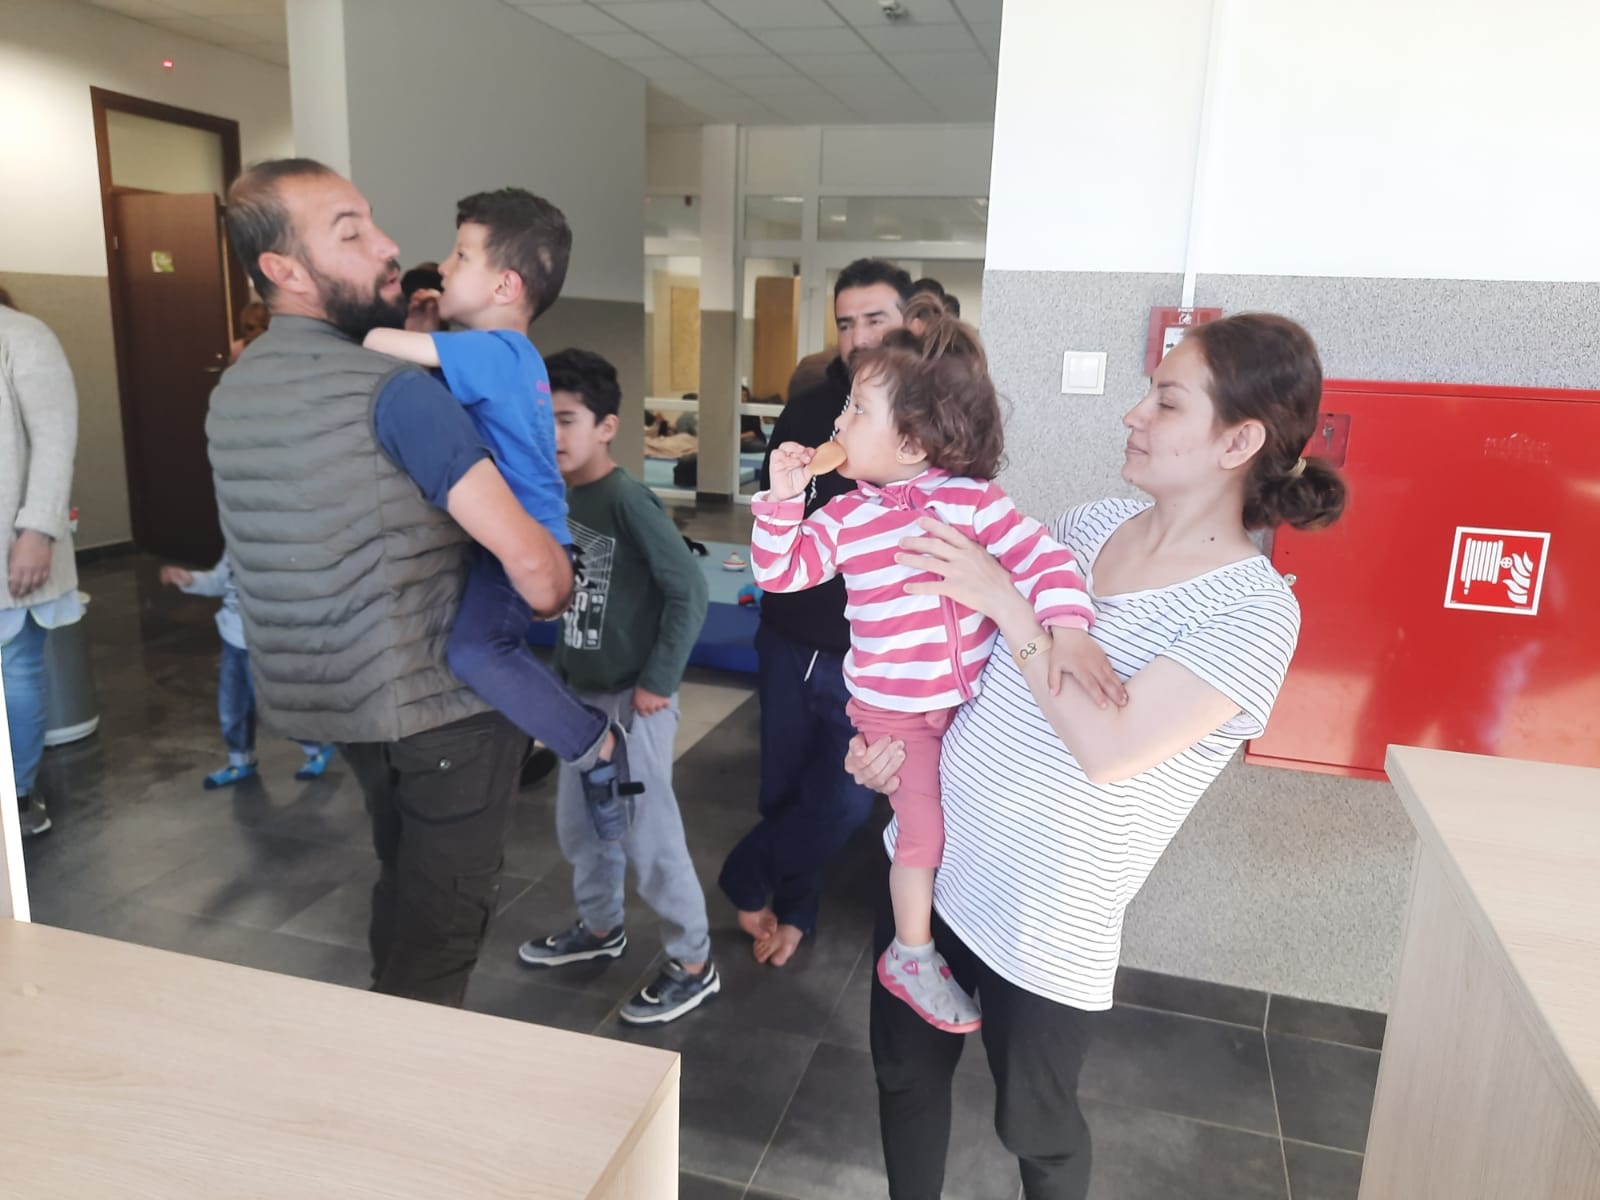 Польские пограничники опубликовали фото с иракской семьей, якобы вытесненной в Беларусь